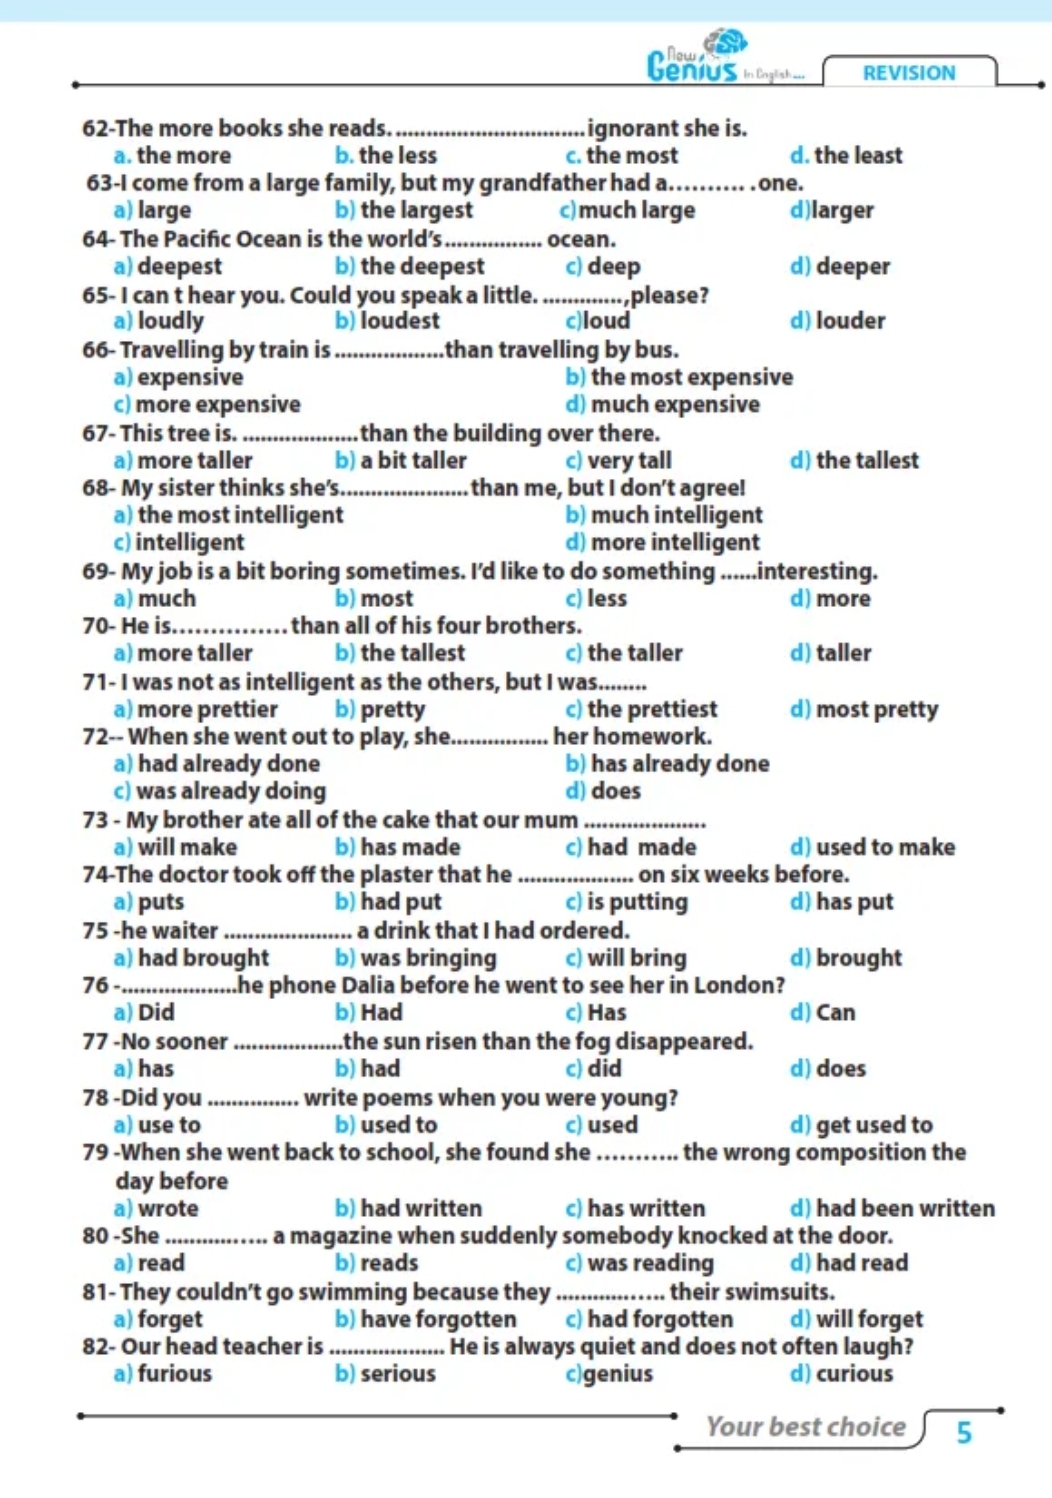 ٢٥٠ سؤال انجليزي للثانوية العامة والأزهرية - new genius